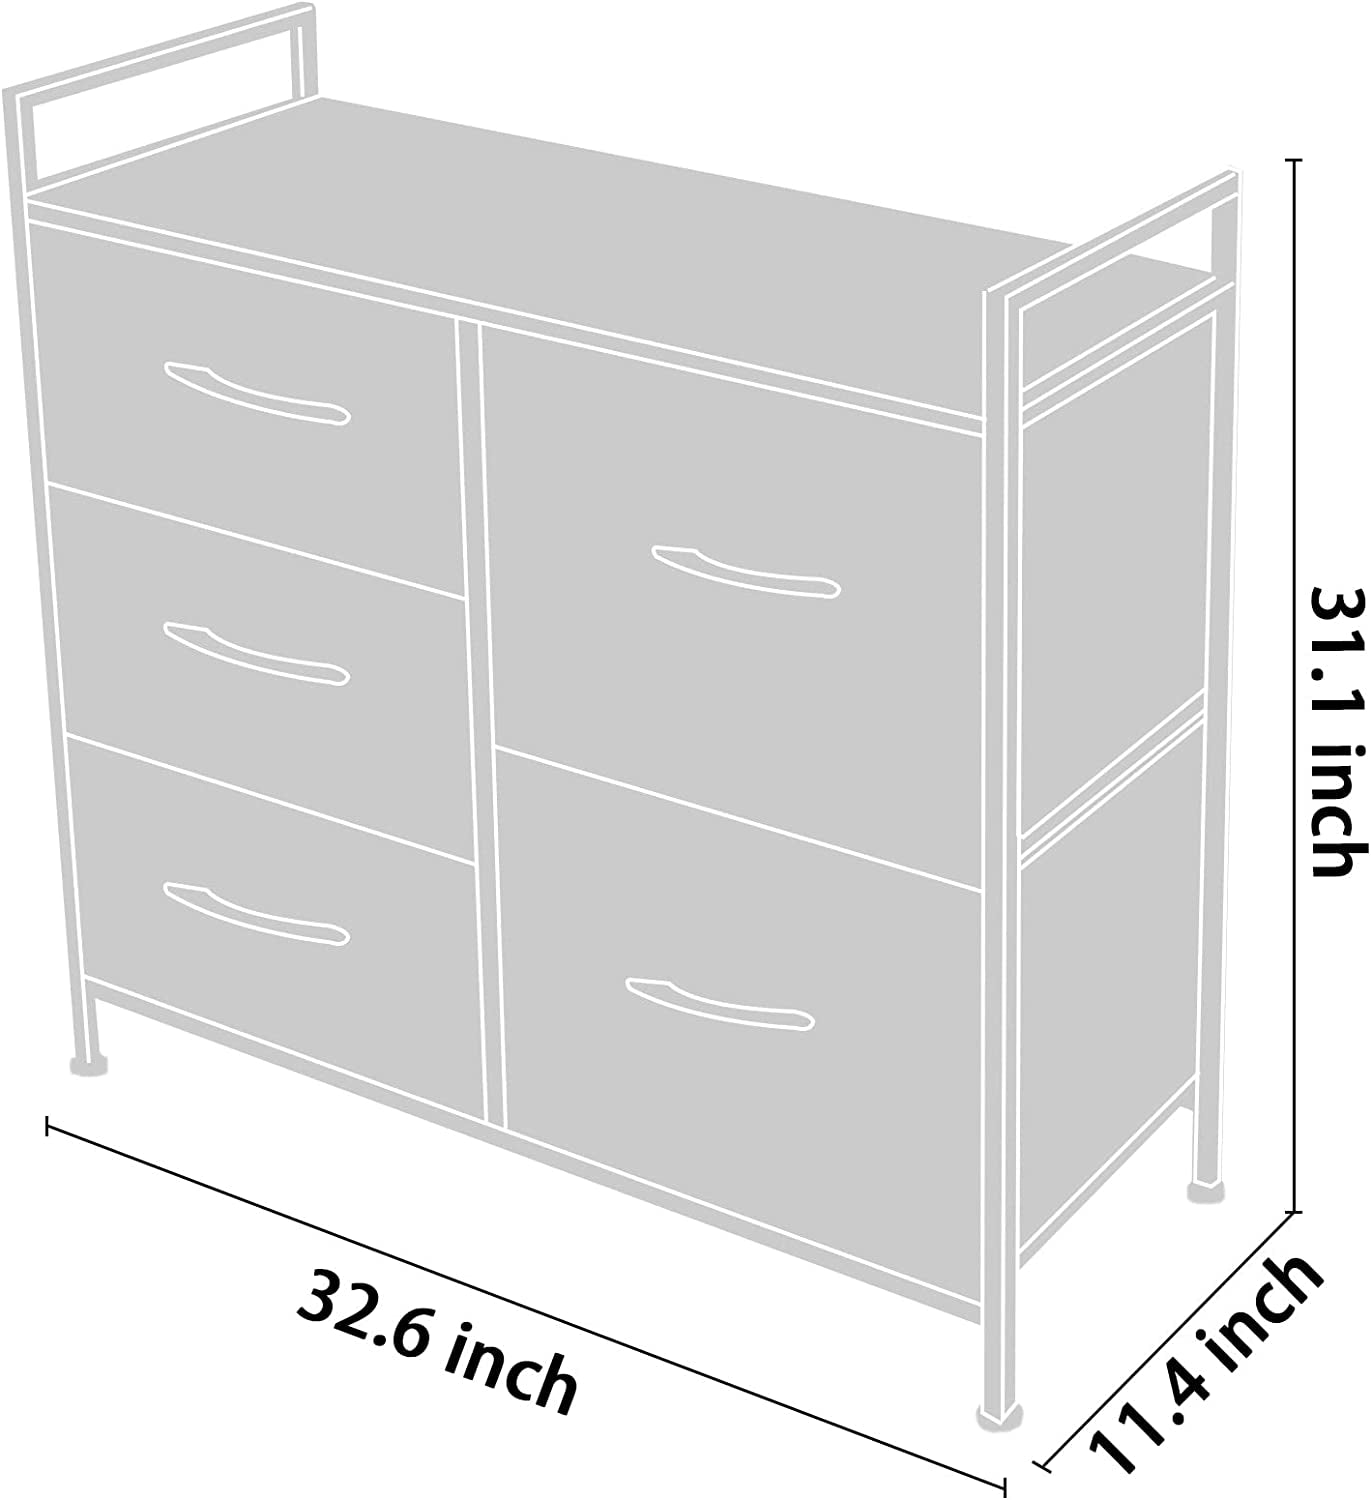 Sturdy Steel Frame Storage Tower with WoodTop, Easy-Pull Fabric Bins, Organizer Unit, Dark Grey 3-5